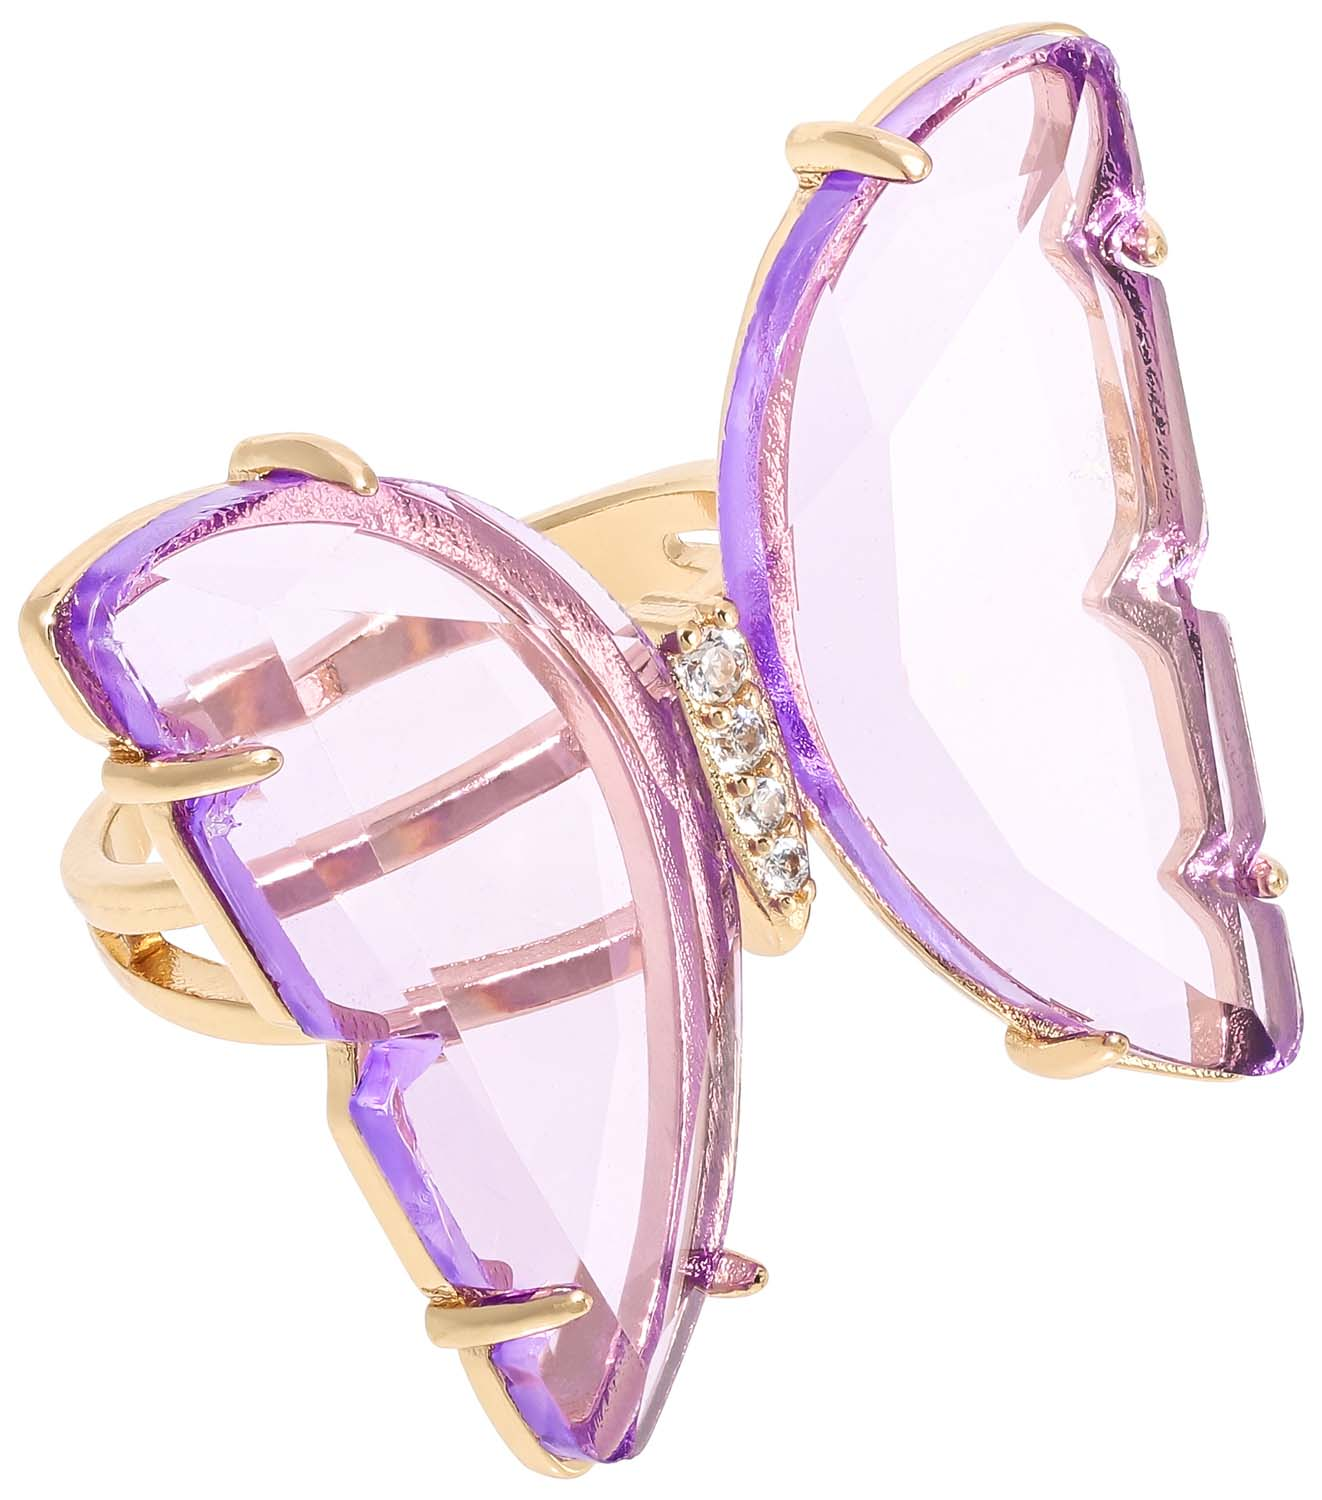 Ring - Transparent Purple